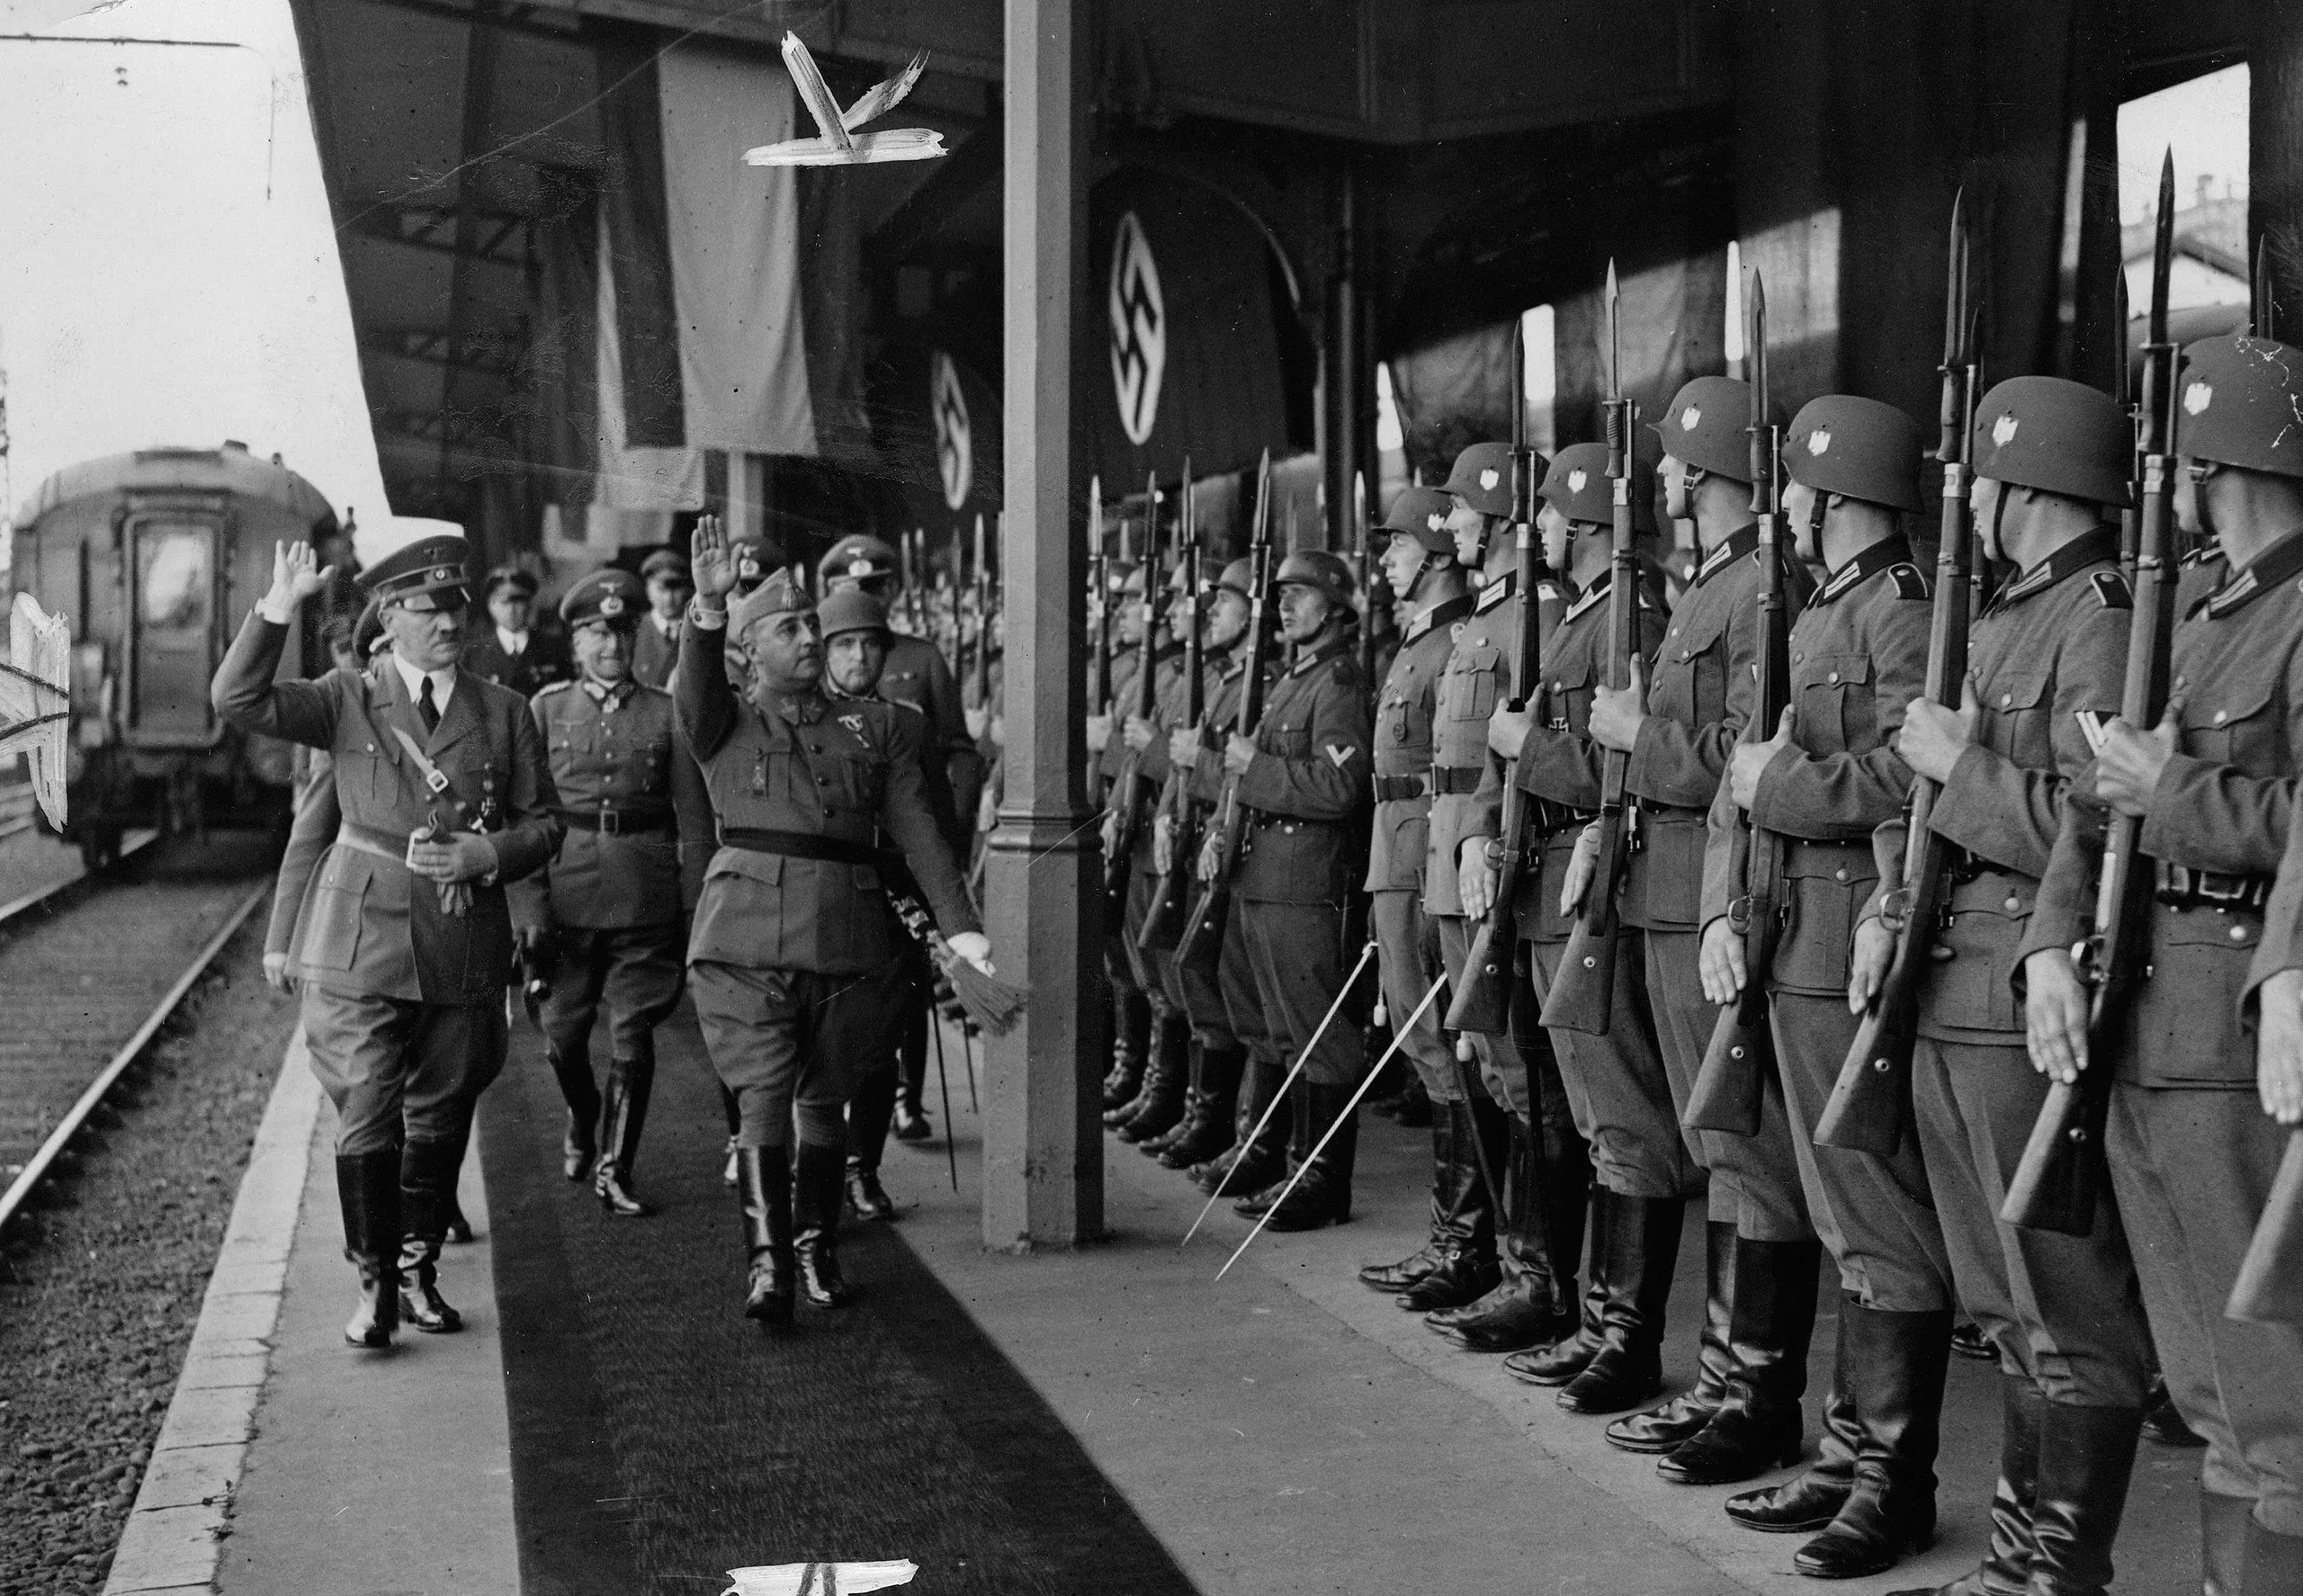 Els acords i la col·laboració entre el règim de Franco i Hitler van visualitzar-se en la històrica trobada d’Hendaia, al País Basc del nord